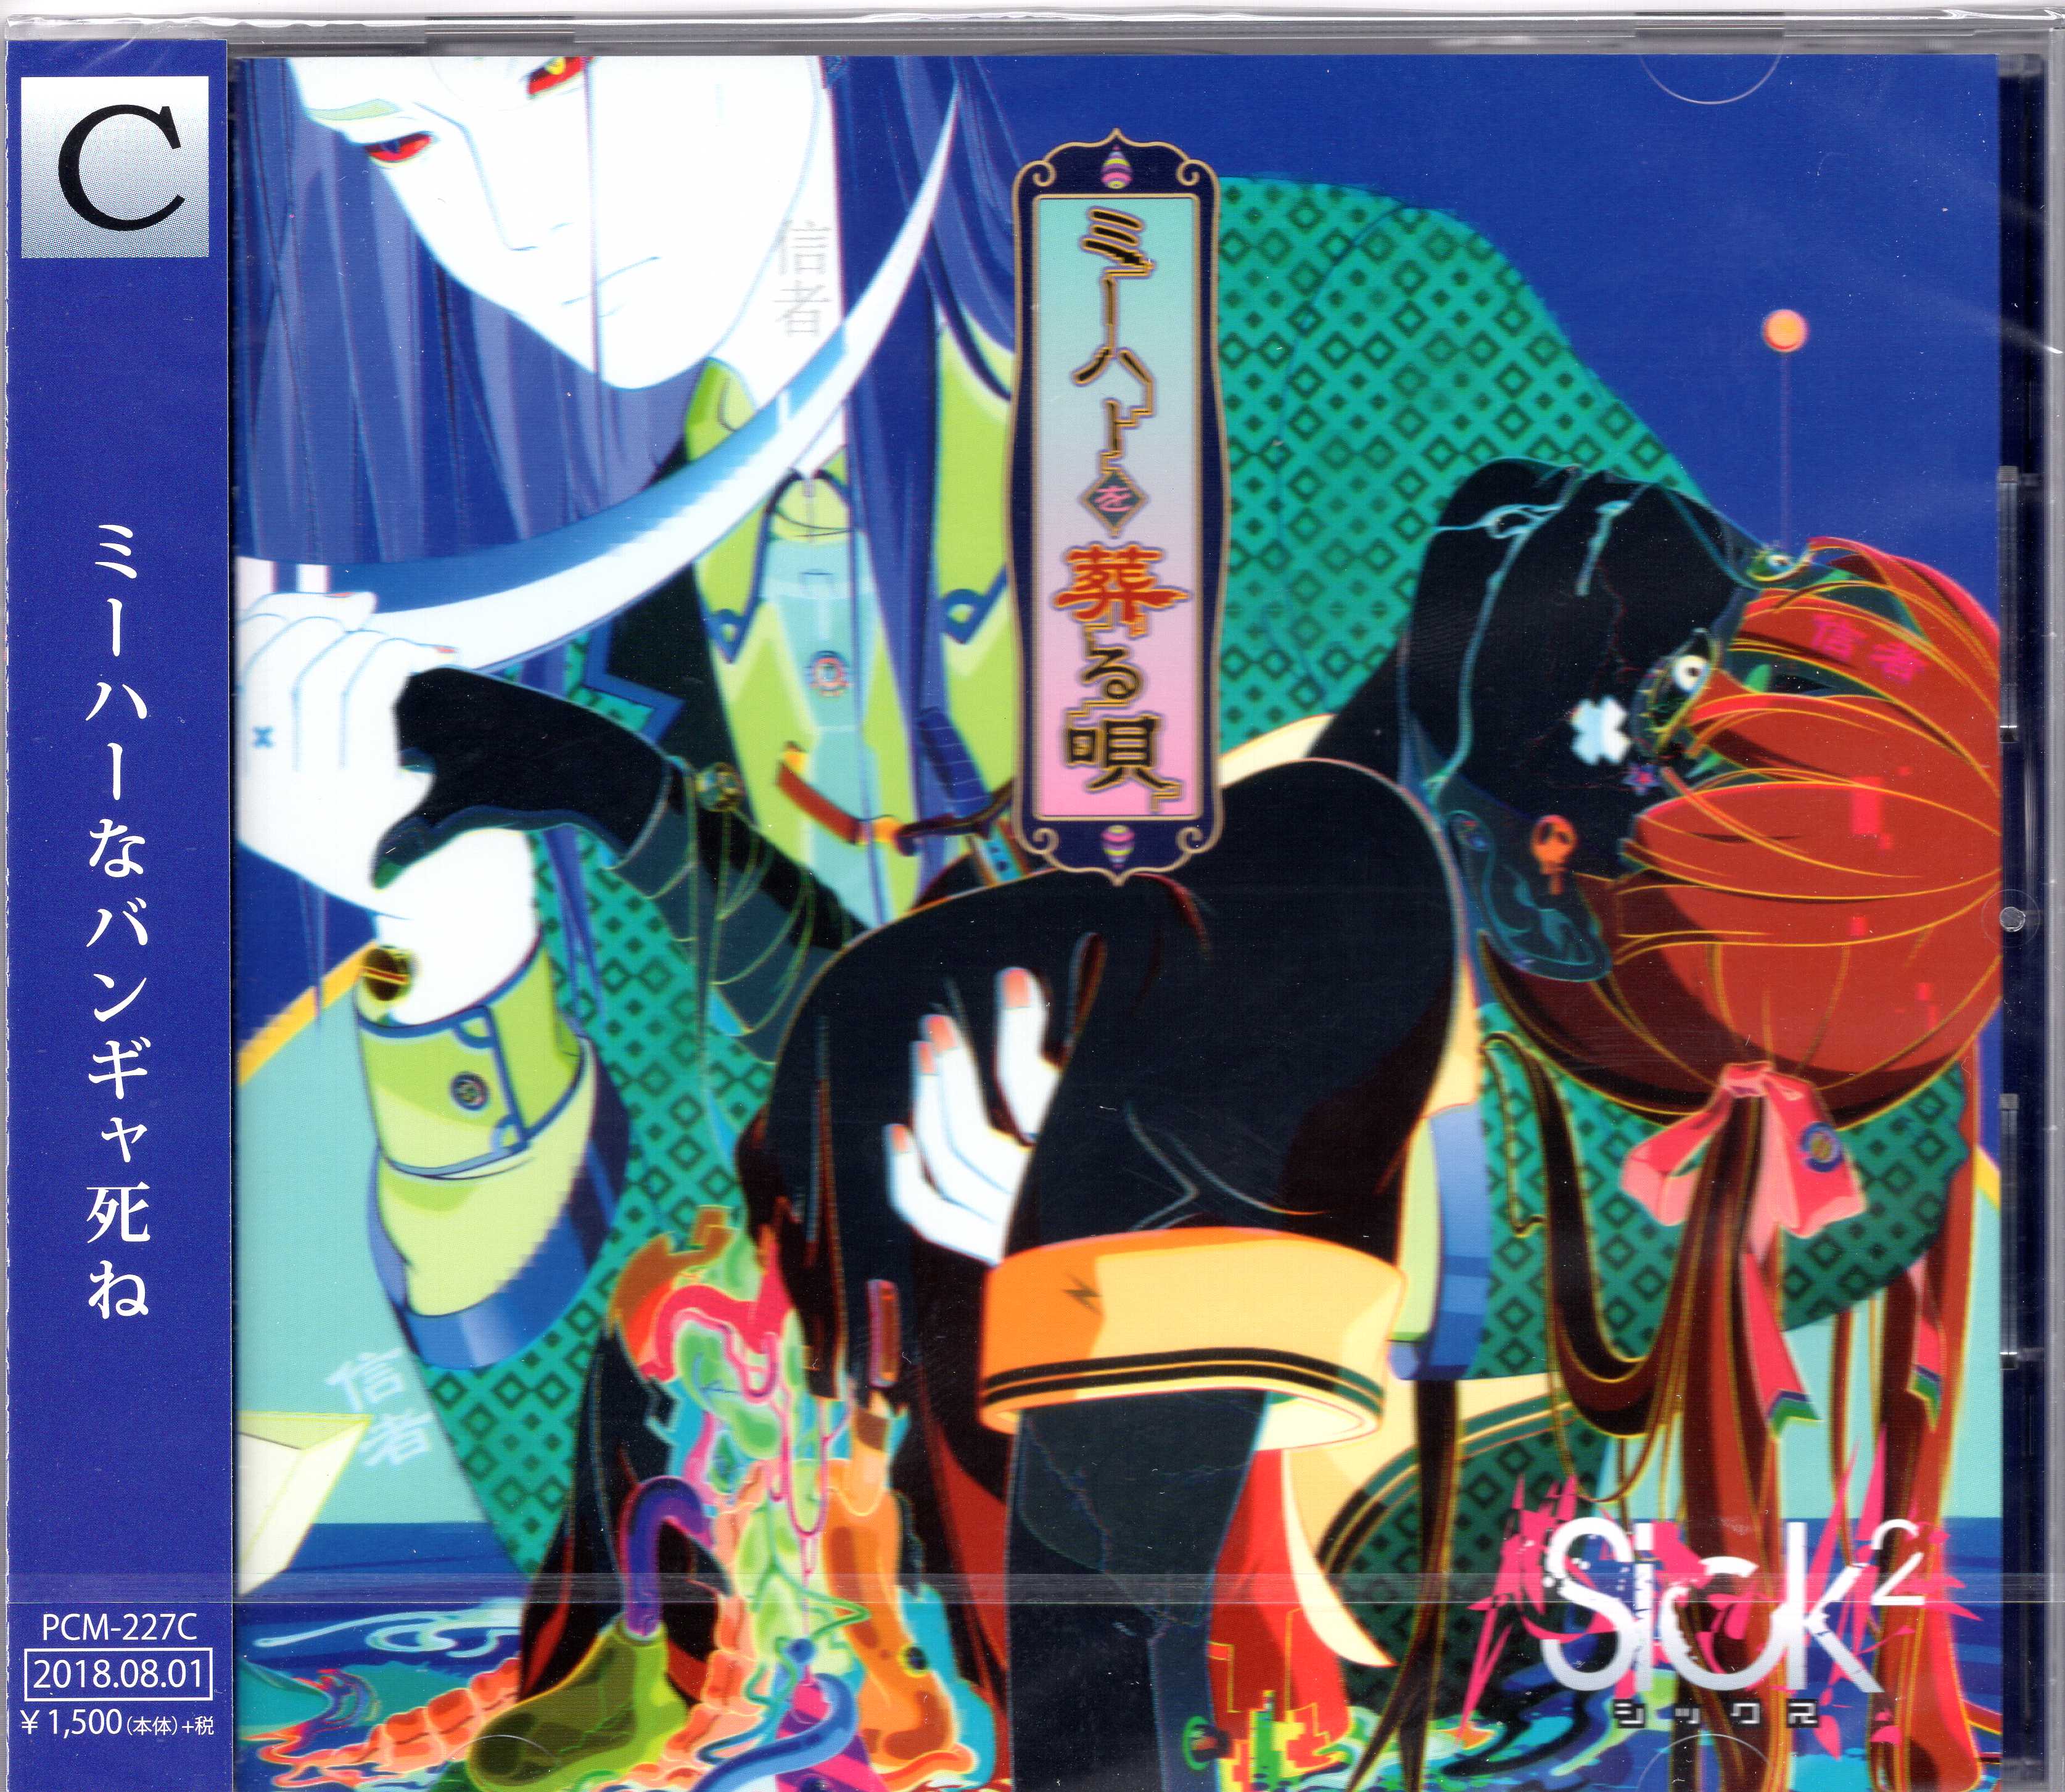 Sick2 ( シックス )  の CD 【Ctype】ミーハーを葬る唄